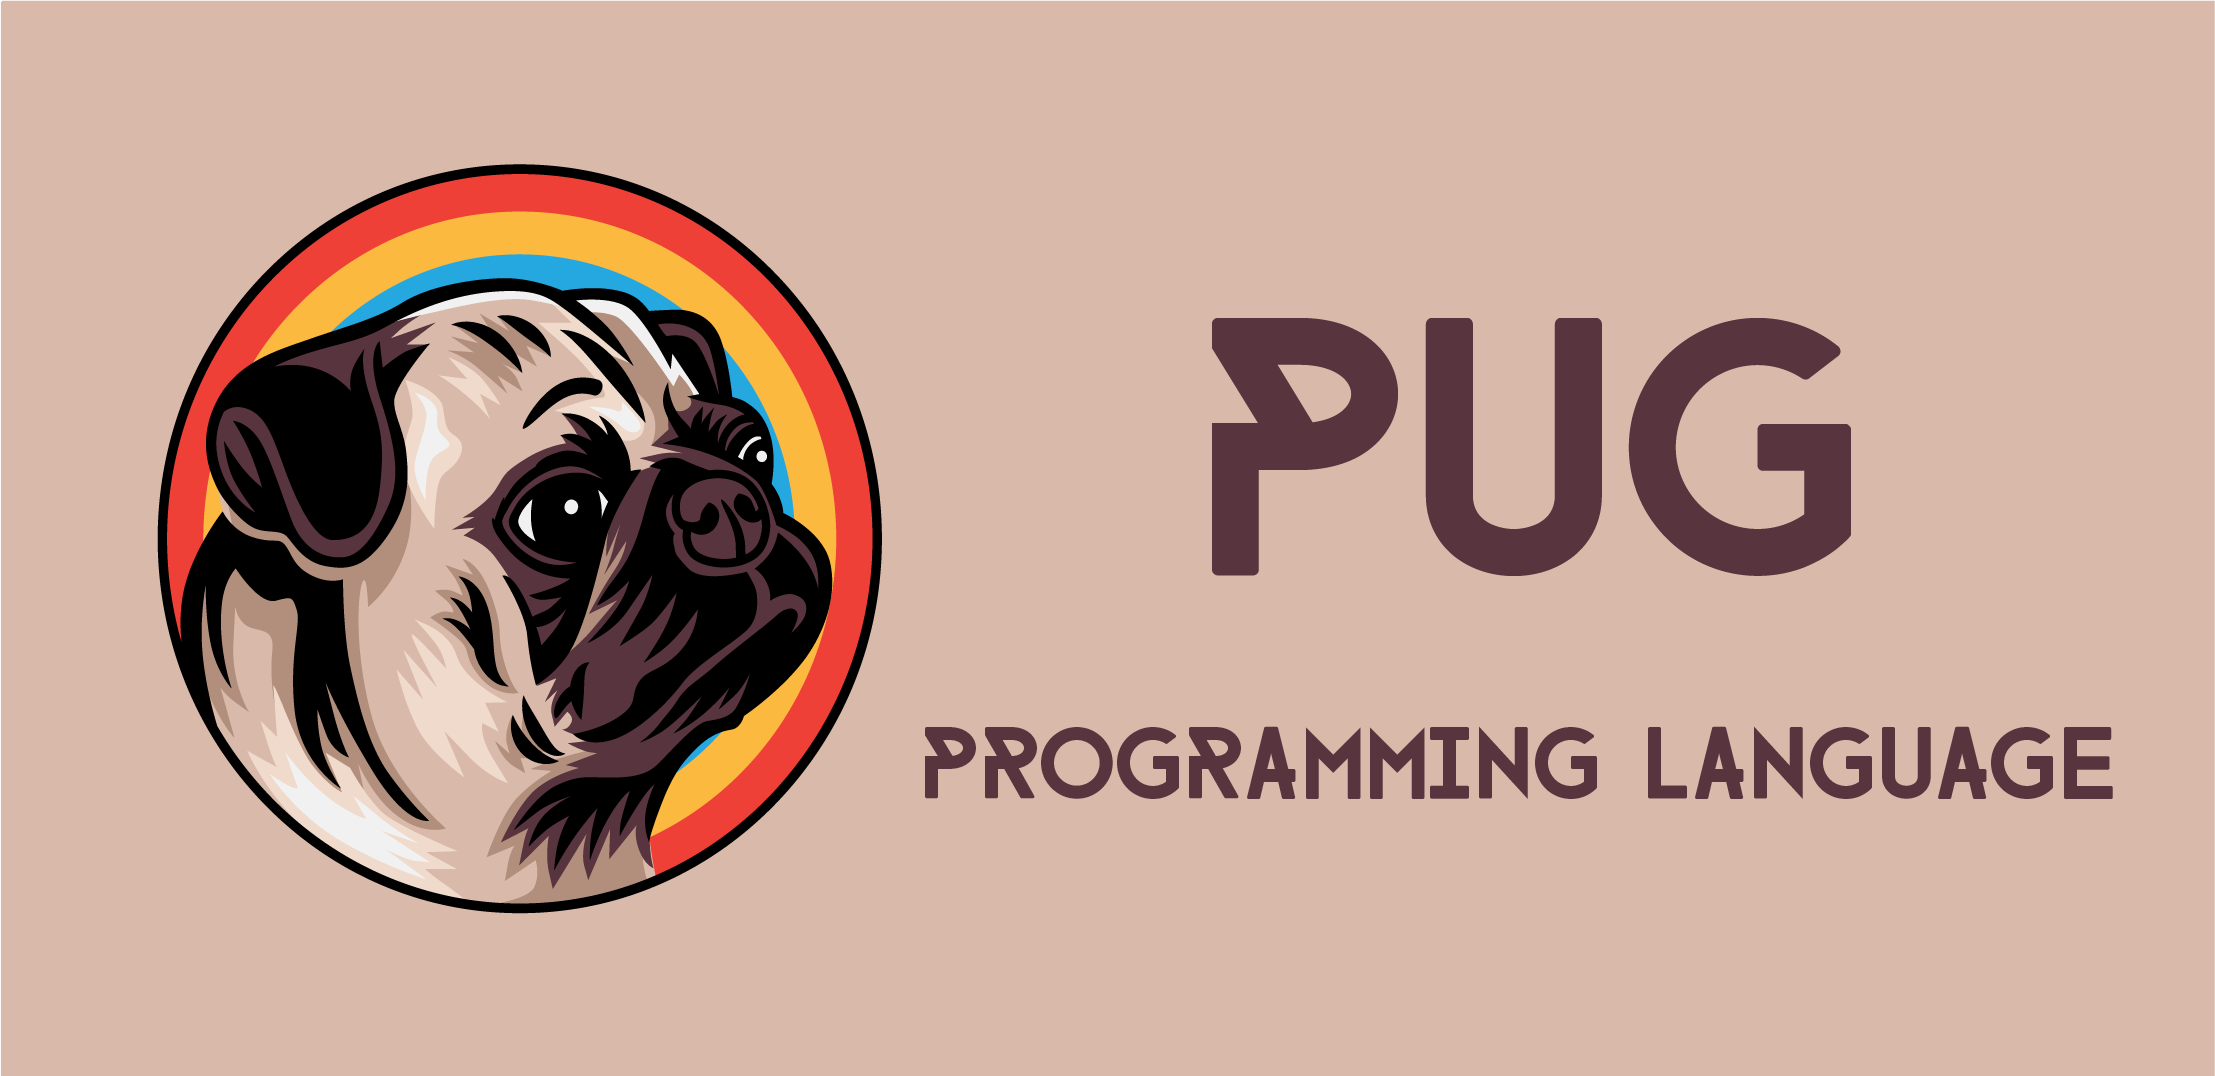 https://raw.githubusercontent.com/puglang/pug/main/img/pug-logo.png